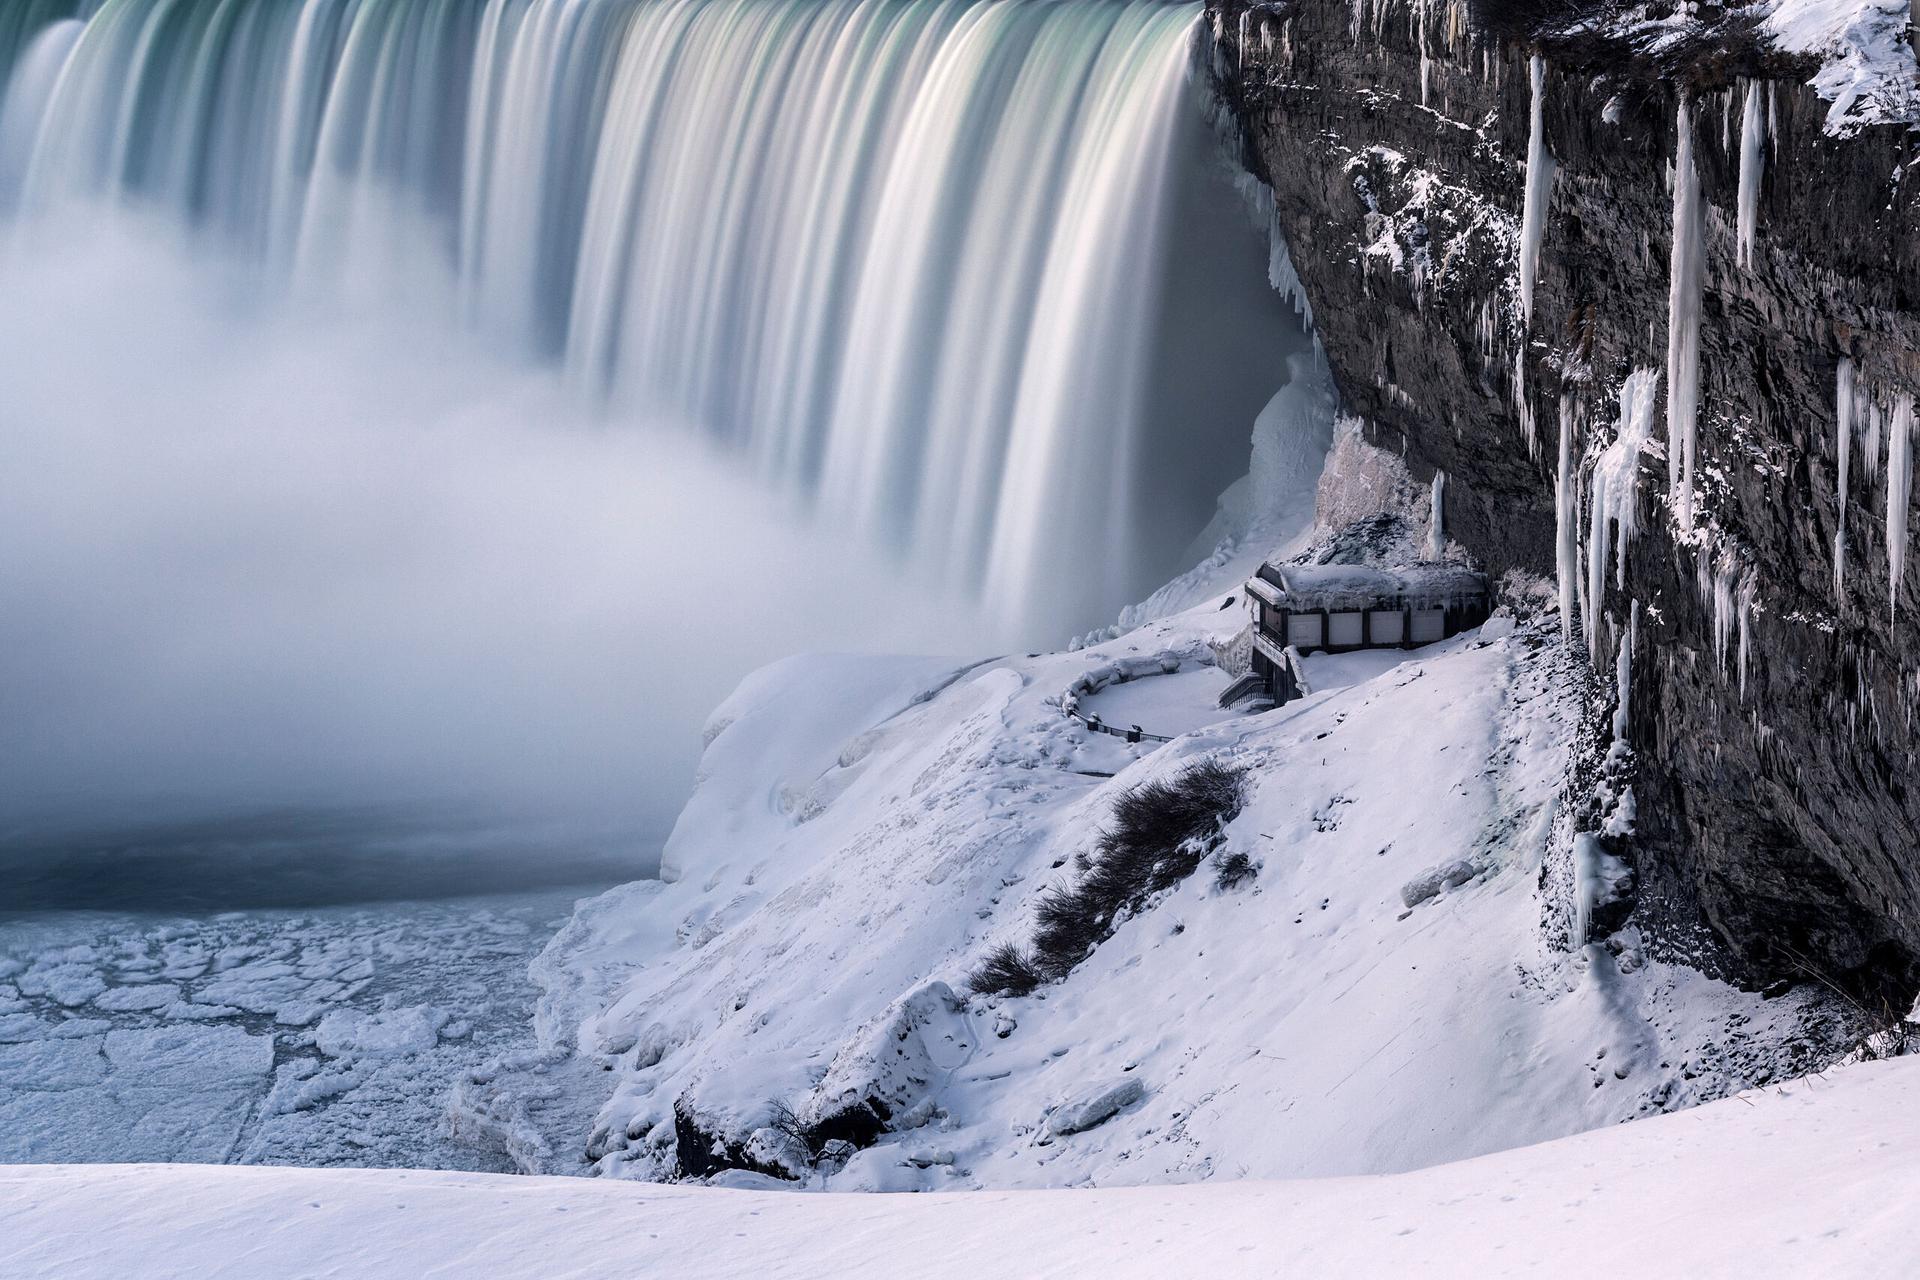 Behind the Falls: Niagara im Eis!